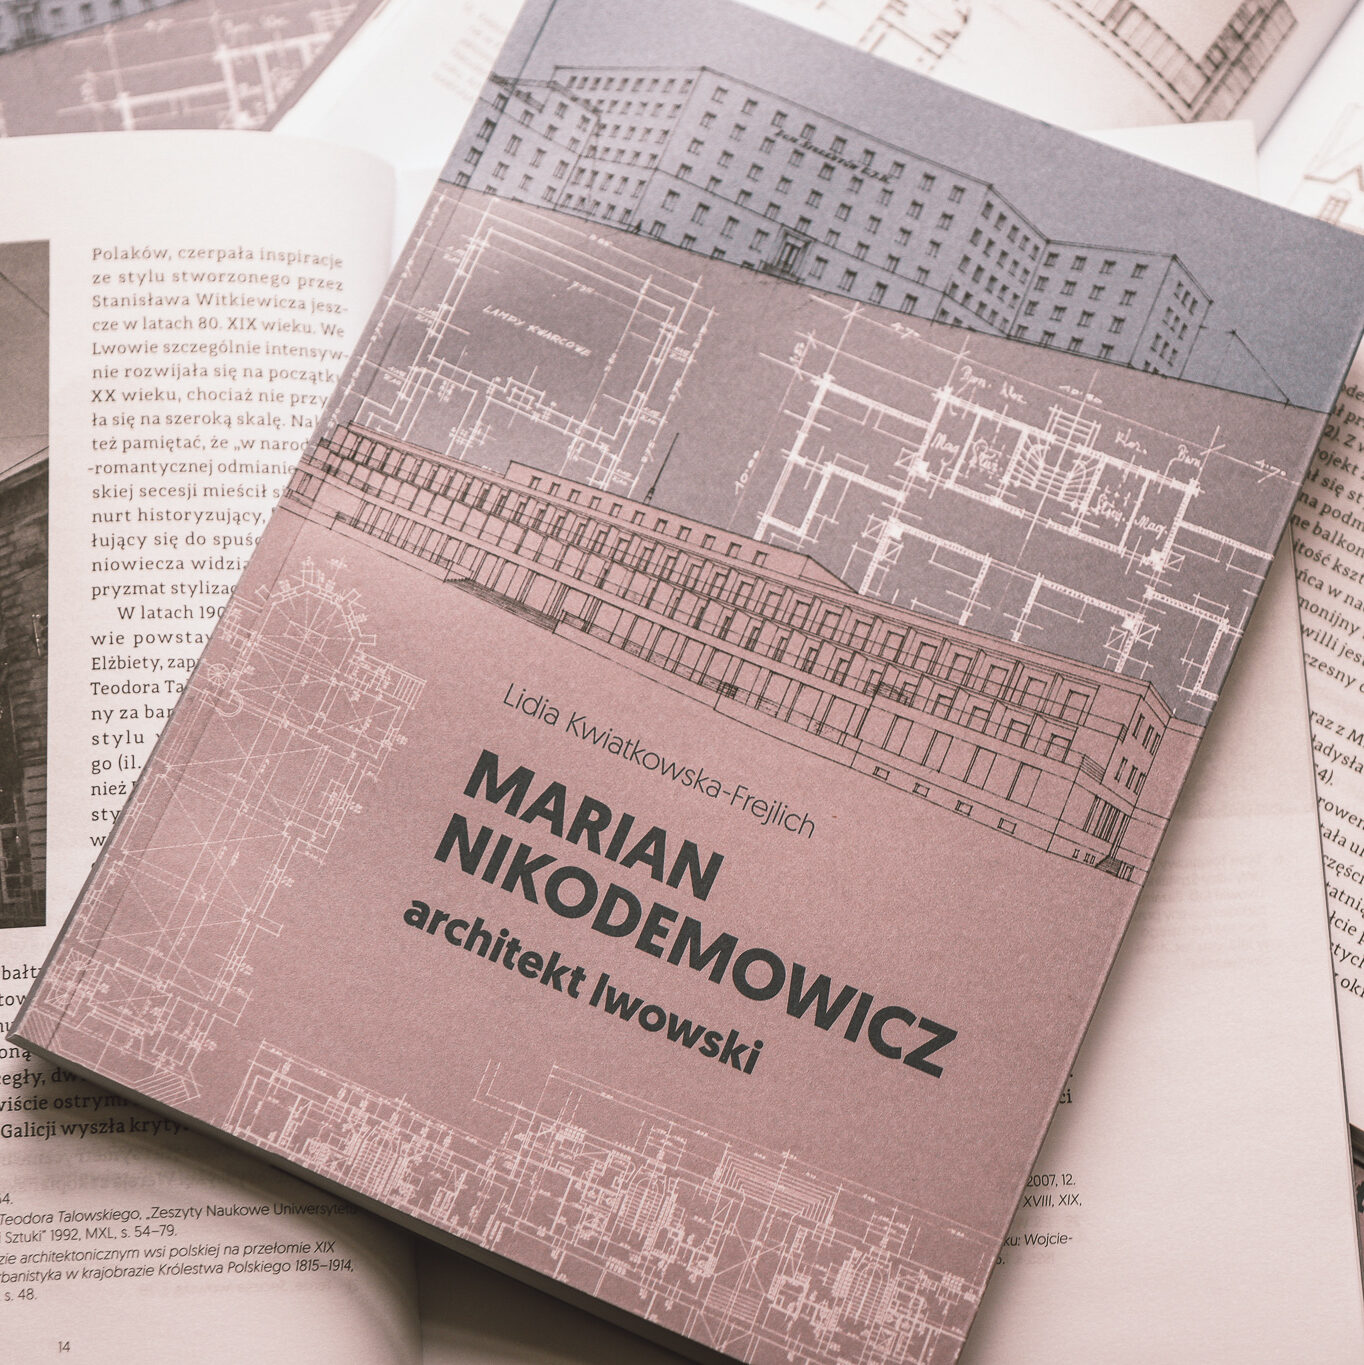 W centrum zdjęcia leży książka pod tytułem Marian Nikodemowicz architekt lwowski. Znajduje się ona na innych książkach, które są otwarte.